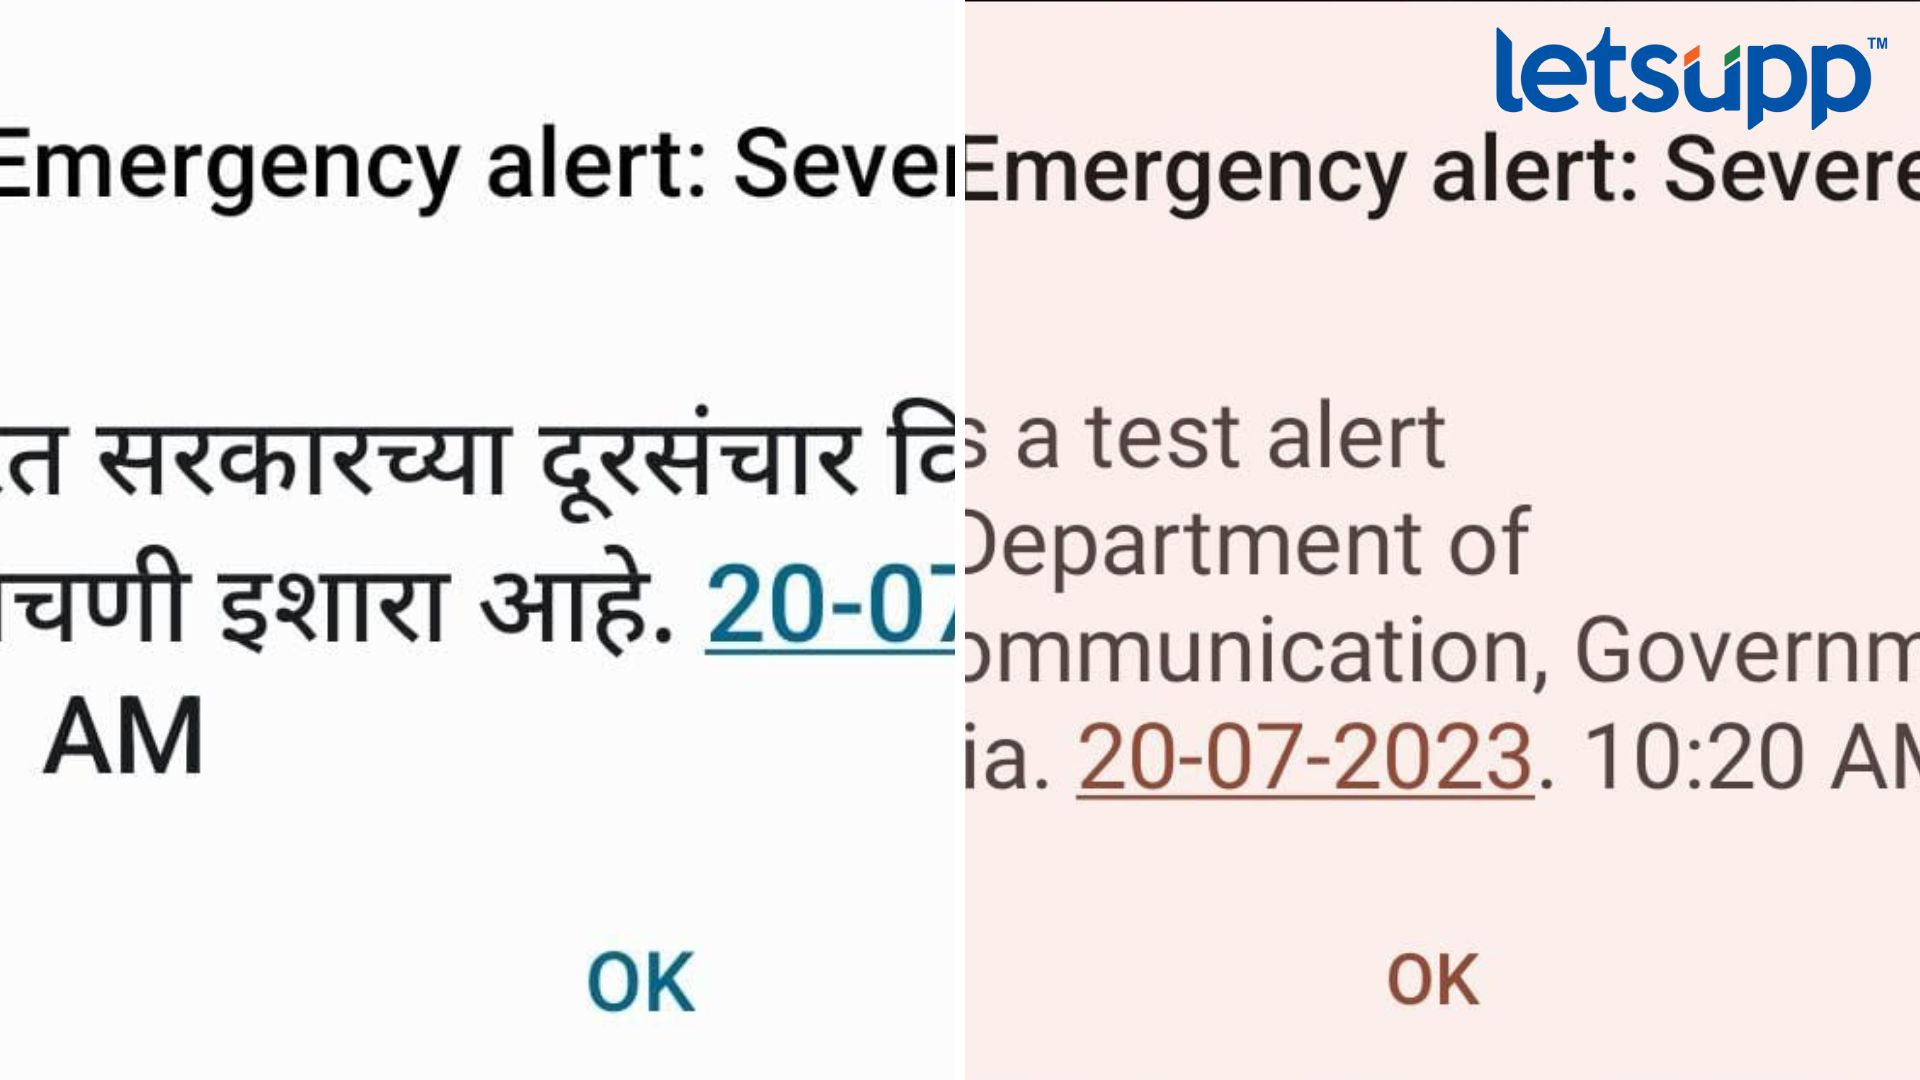 Emergency alert : Severe : तुम्हालाही असे मेसेज येत आहेत का? जाणून घ्या, काय आहे हा प्रकार